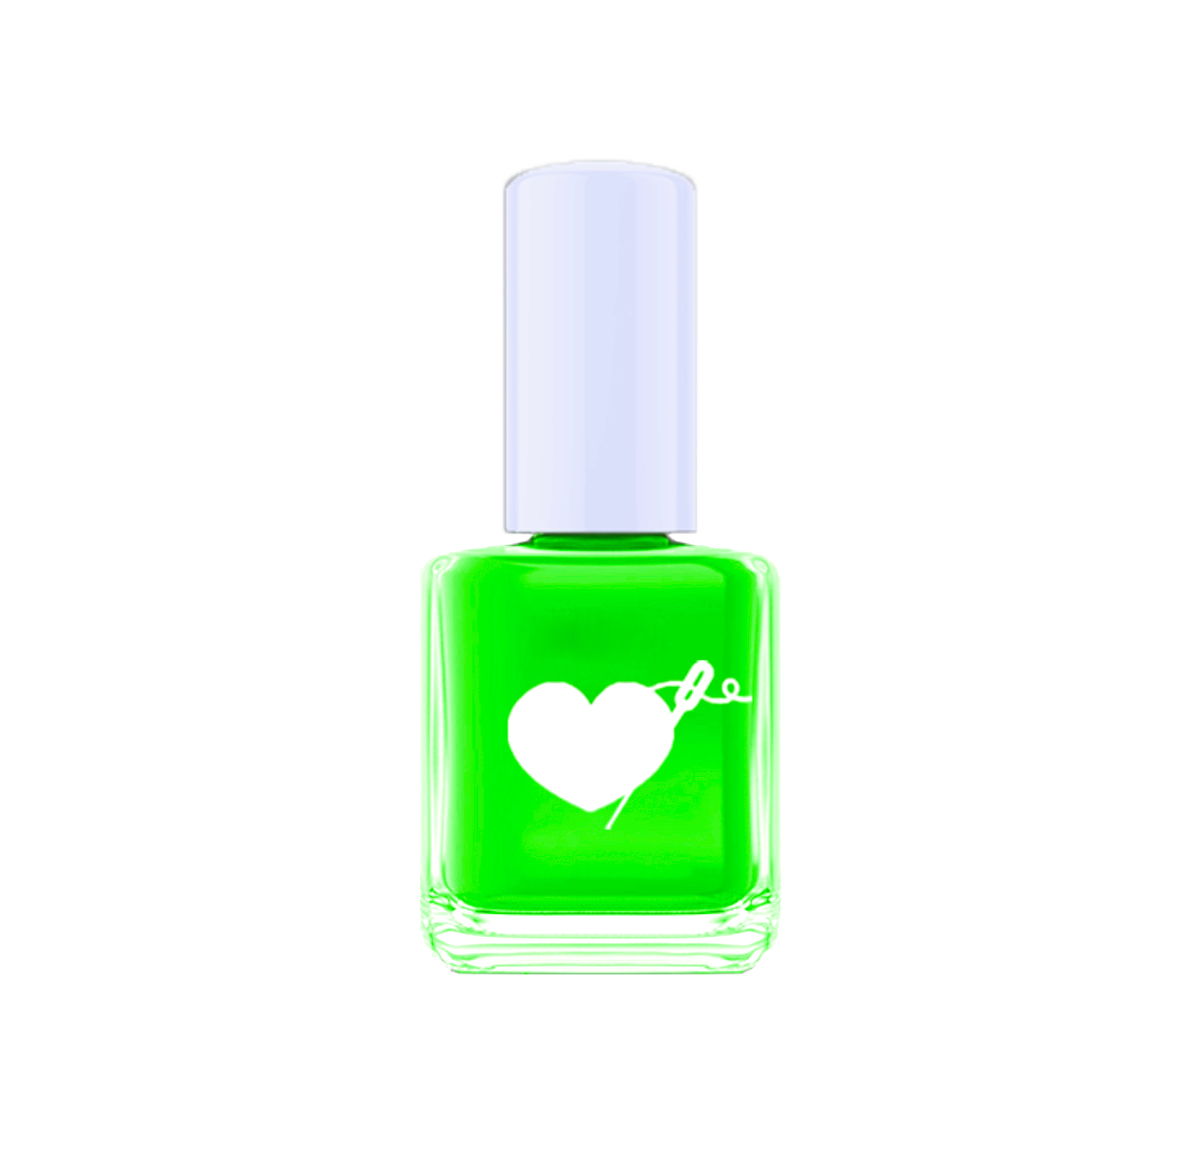 neon green nail polish